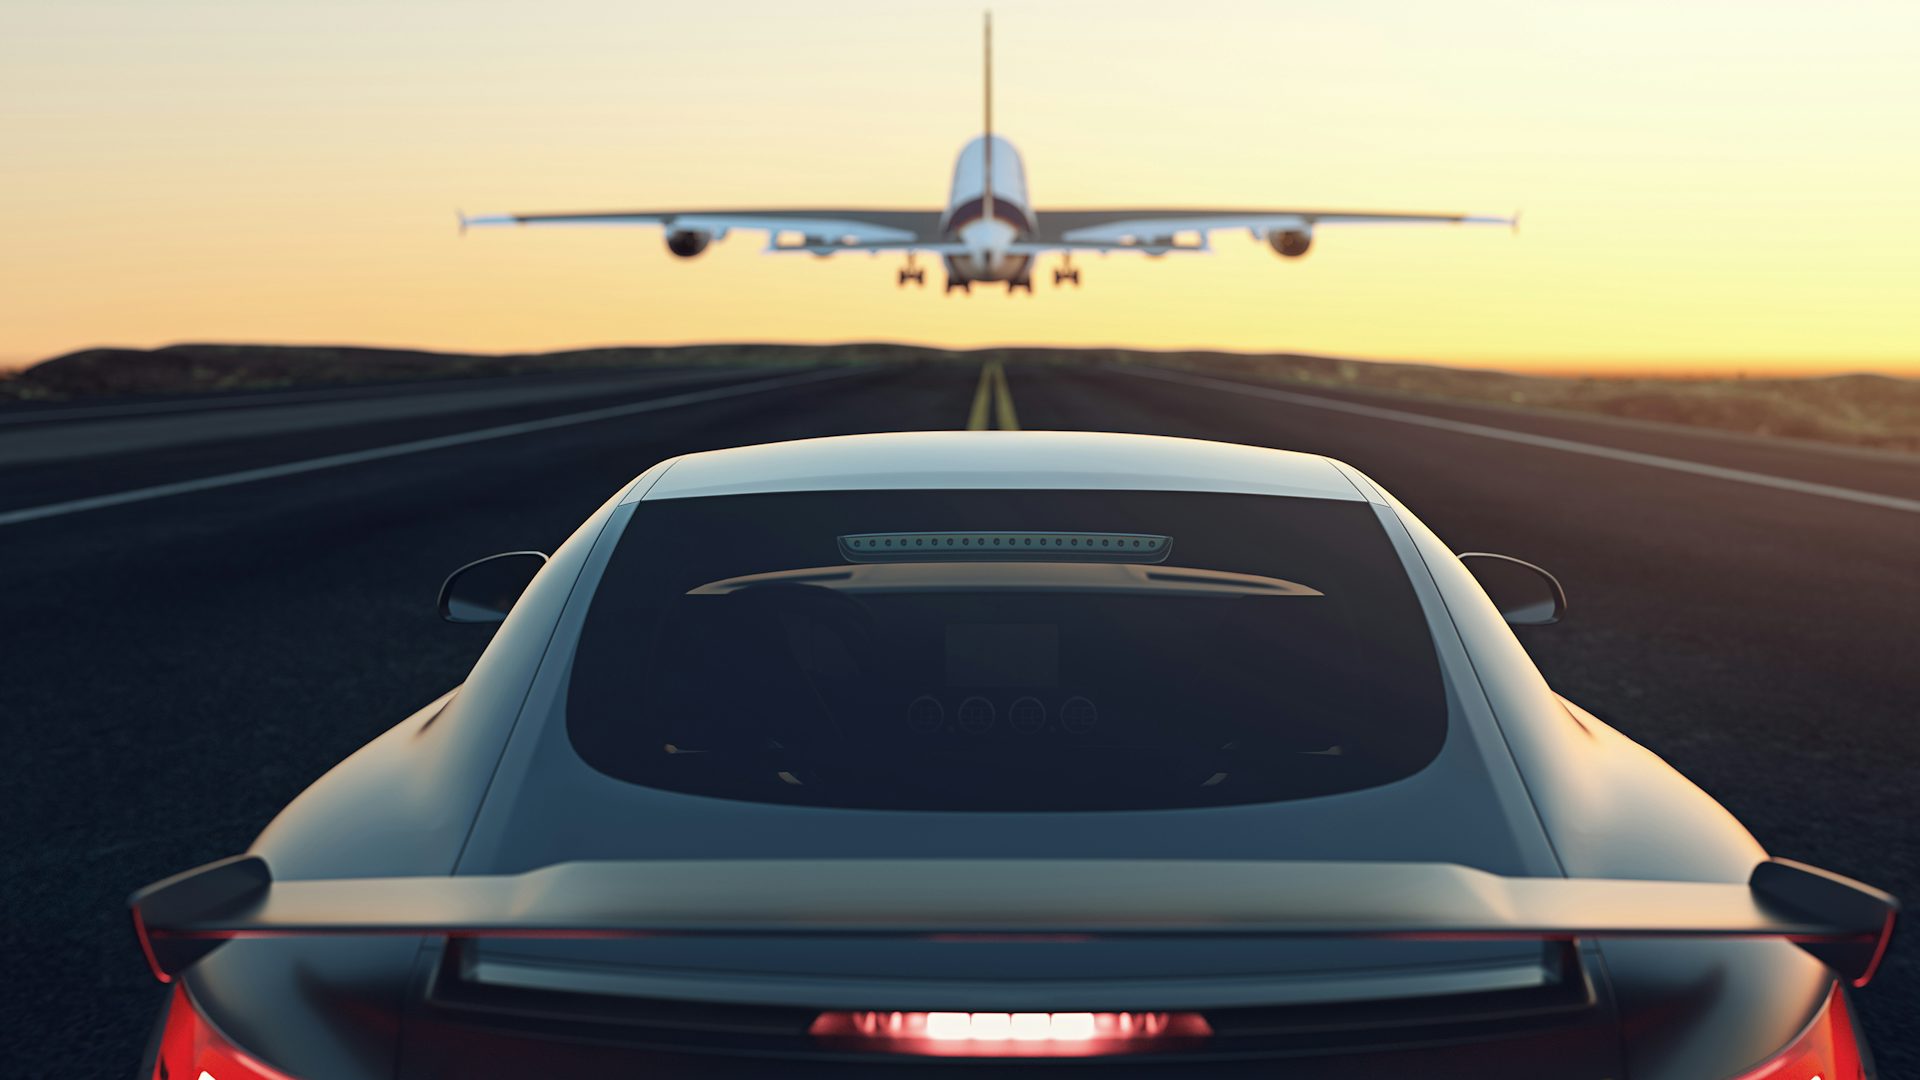 Ein Auto fährt auf einer geraden Strecke, während ein Flugzeug in kurzem Abstand davor abhebt.